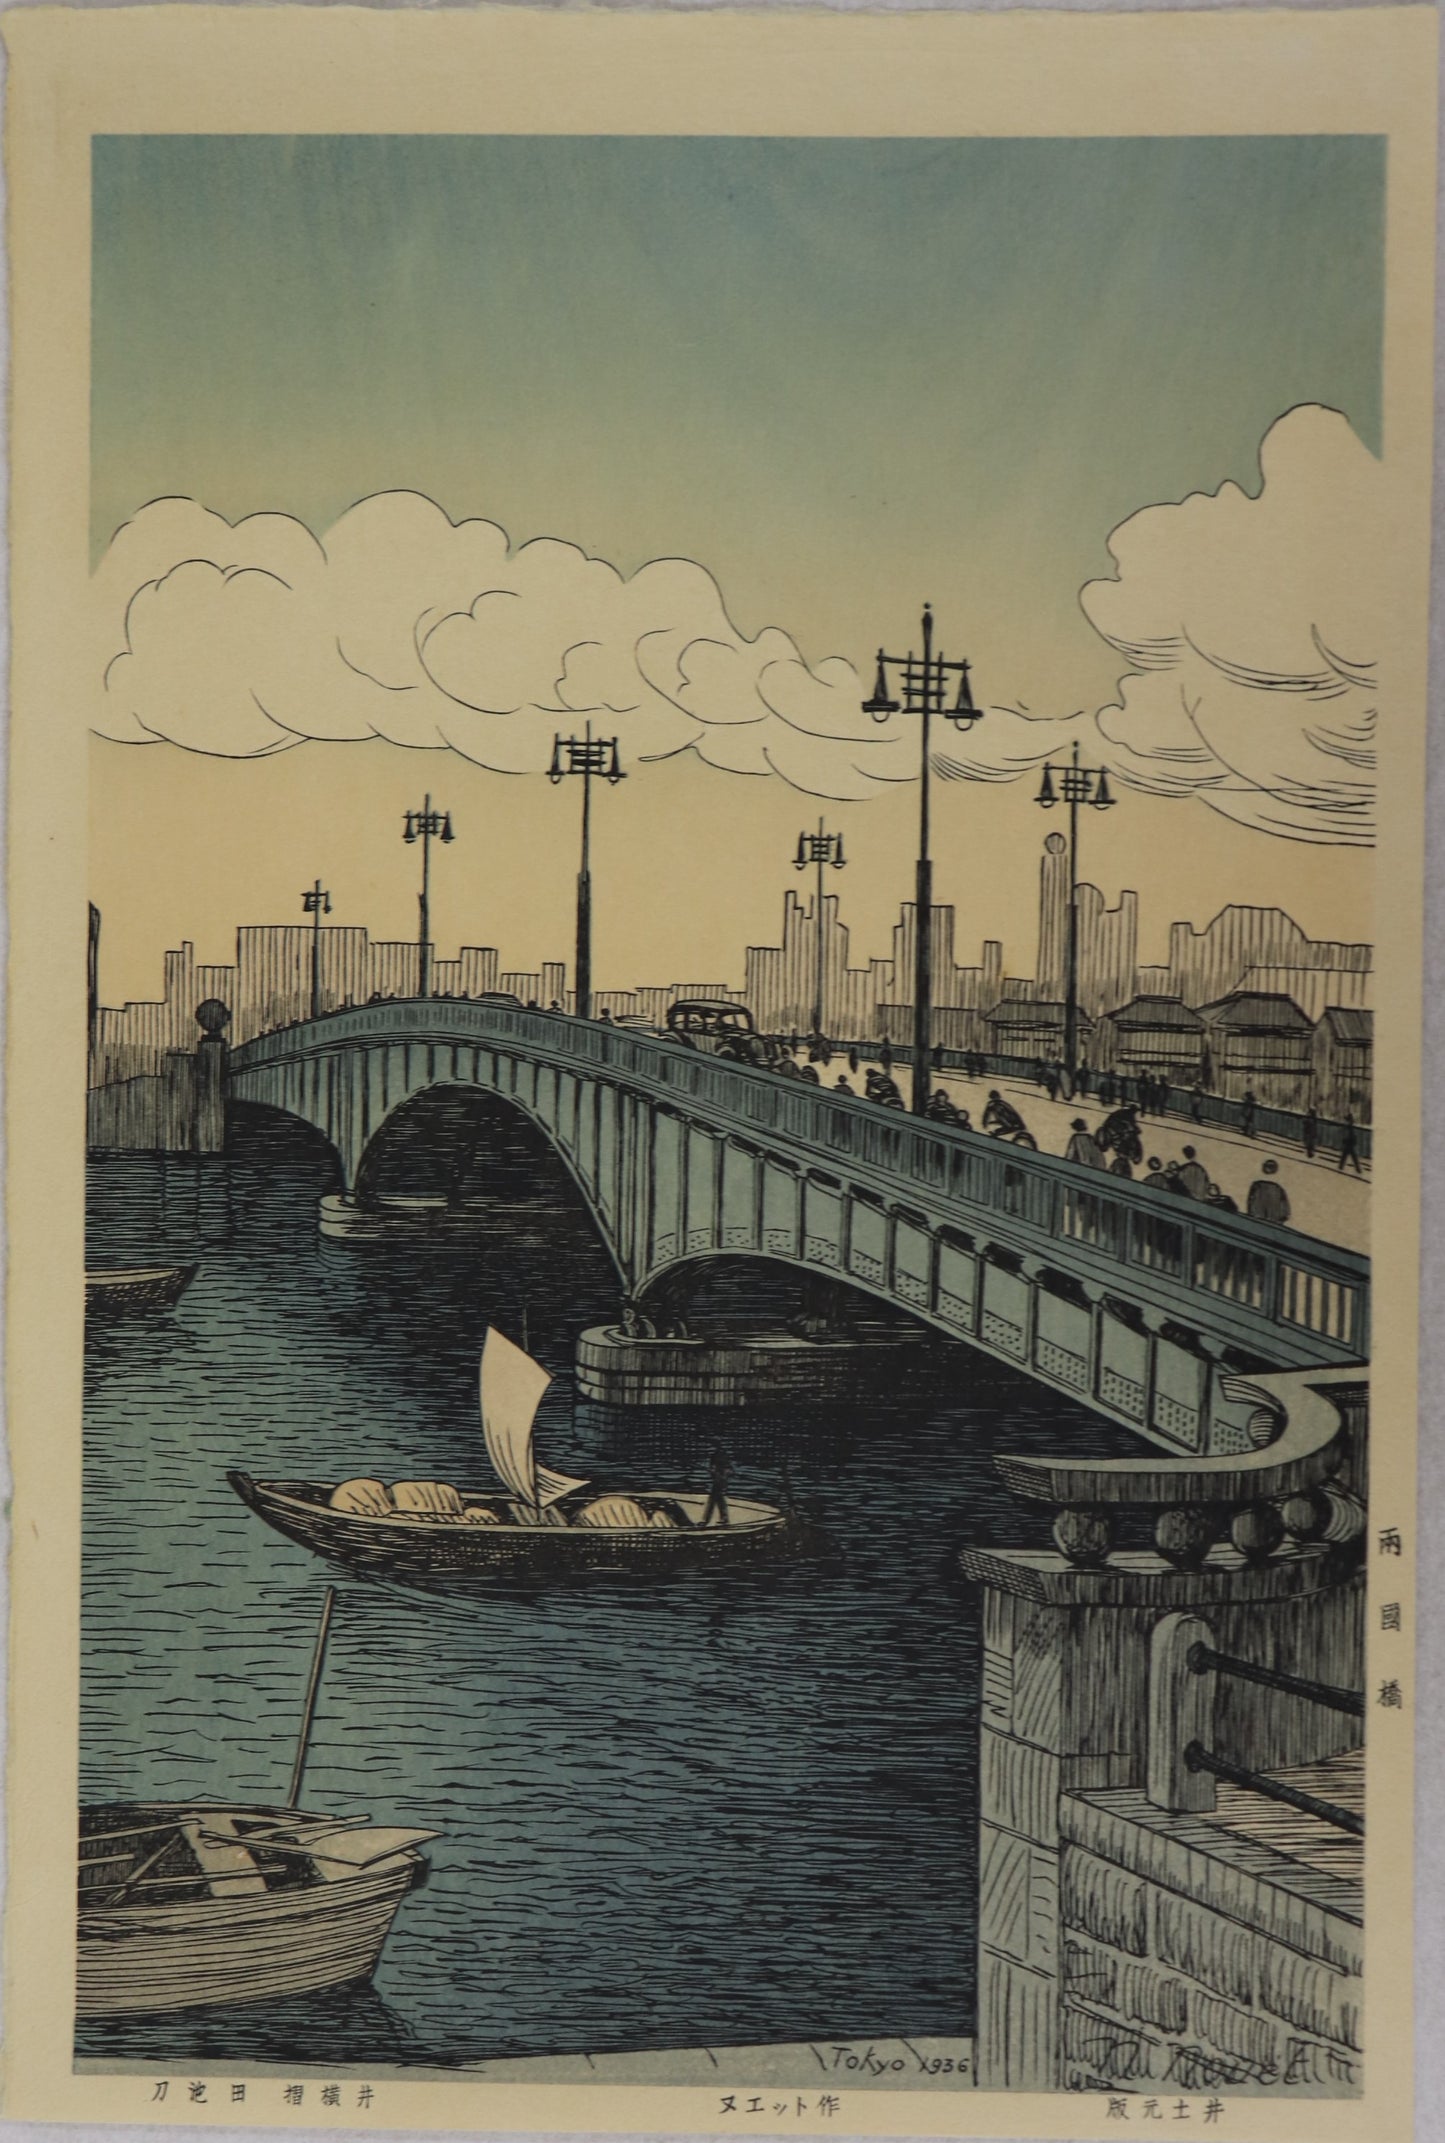 Ryogoku bridge by Noel Nouet / Le pont Ryogoku par Noel Nouet (1936)